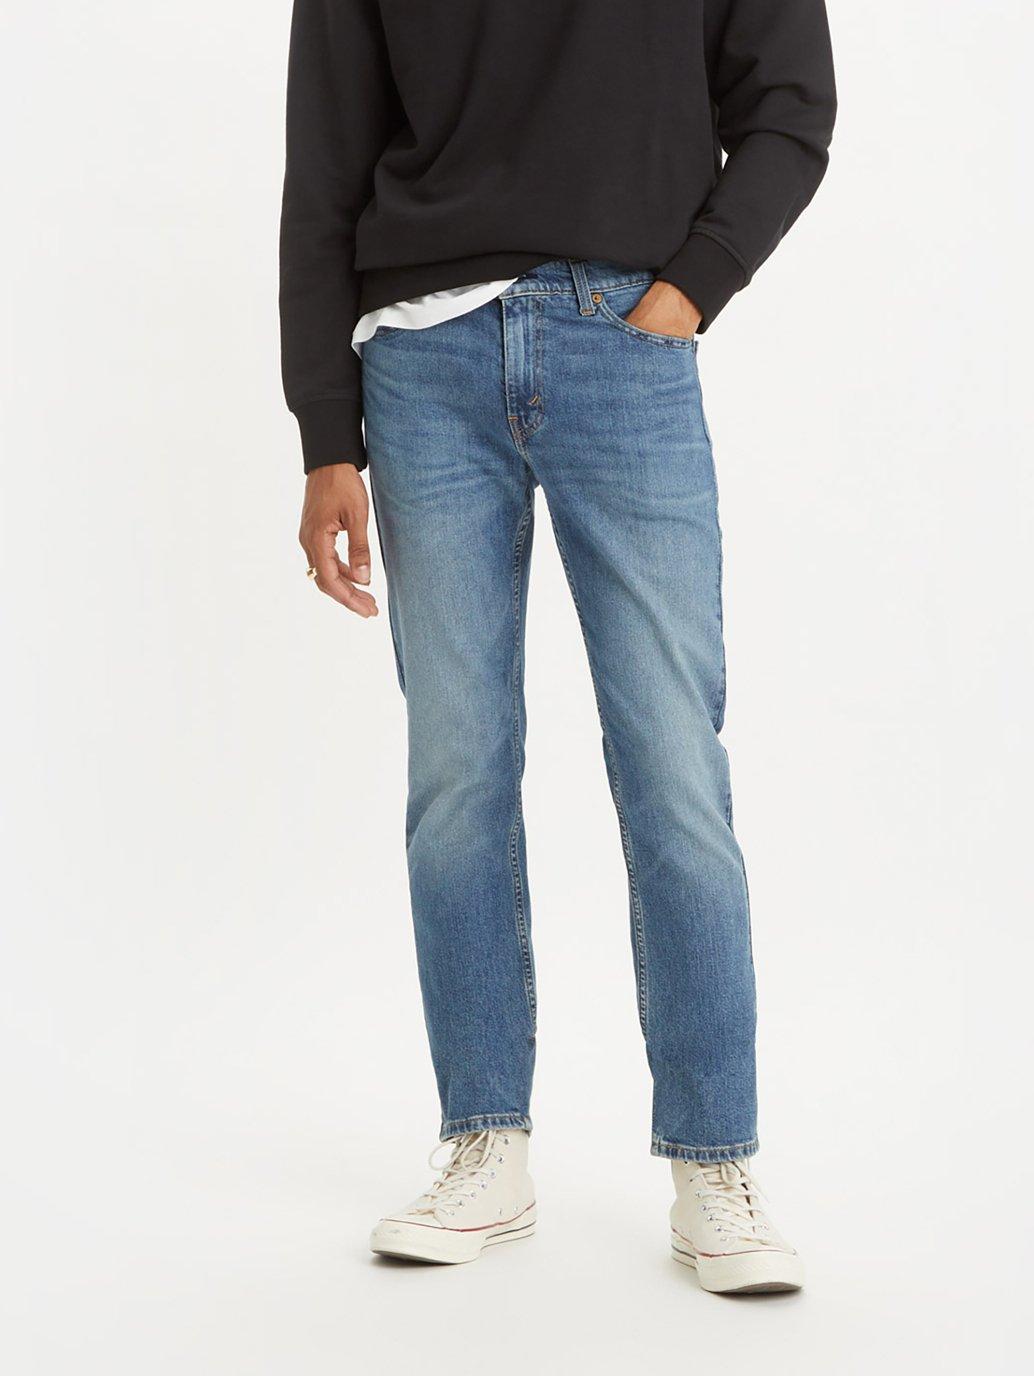 Buy Levi's® Men's 511™ Slim Fit Jeans | Levi's® Official Online Store SG